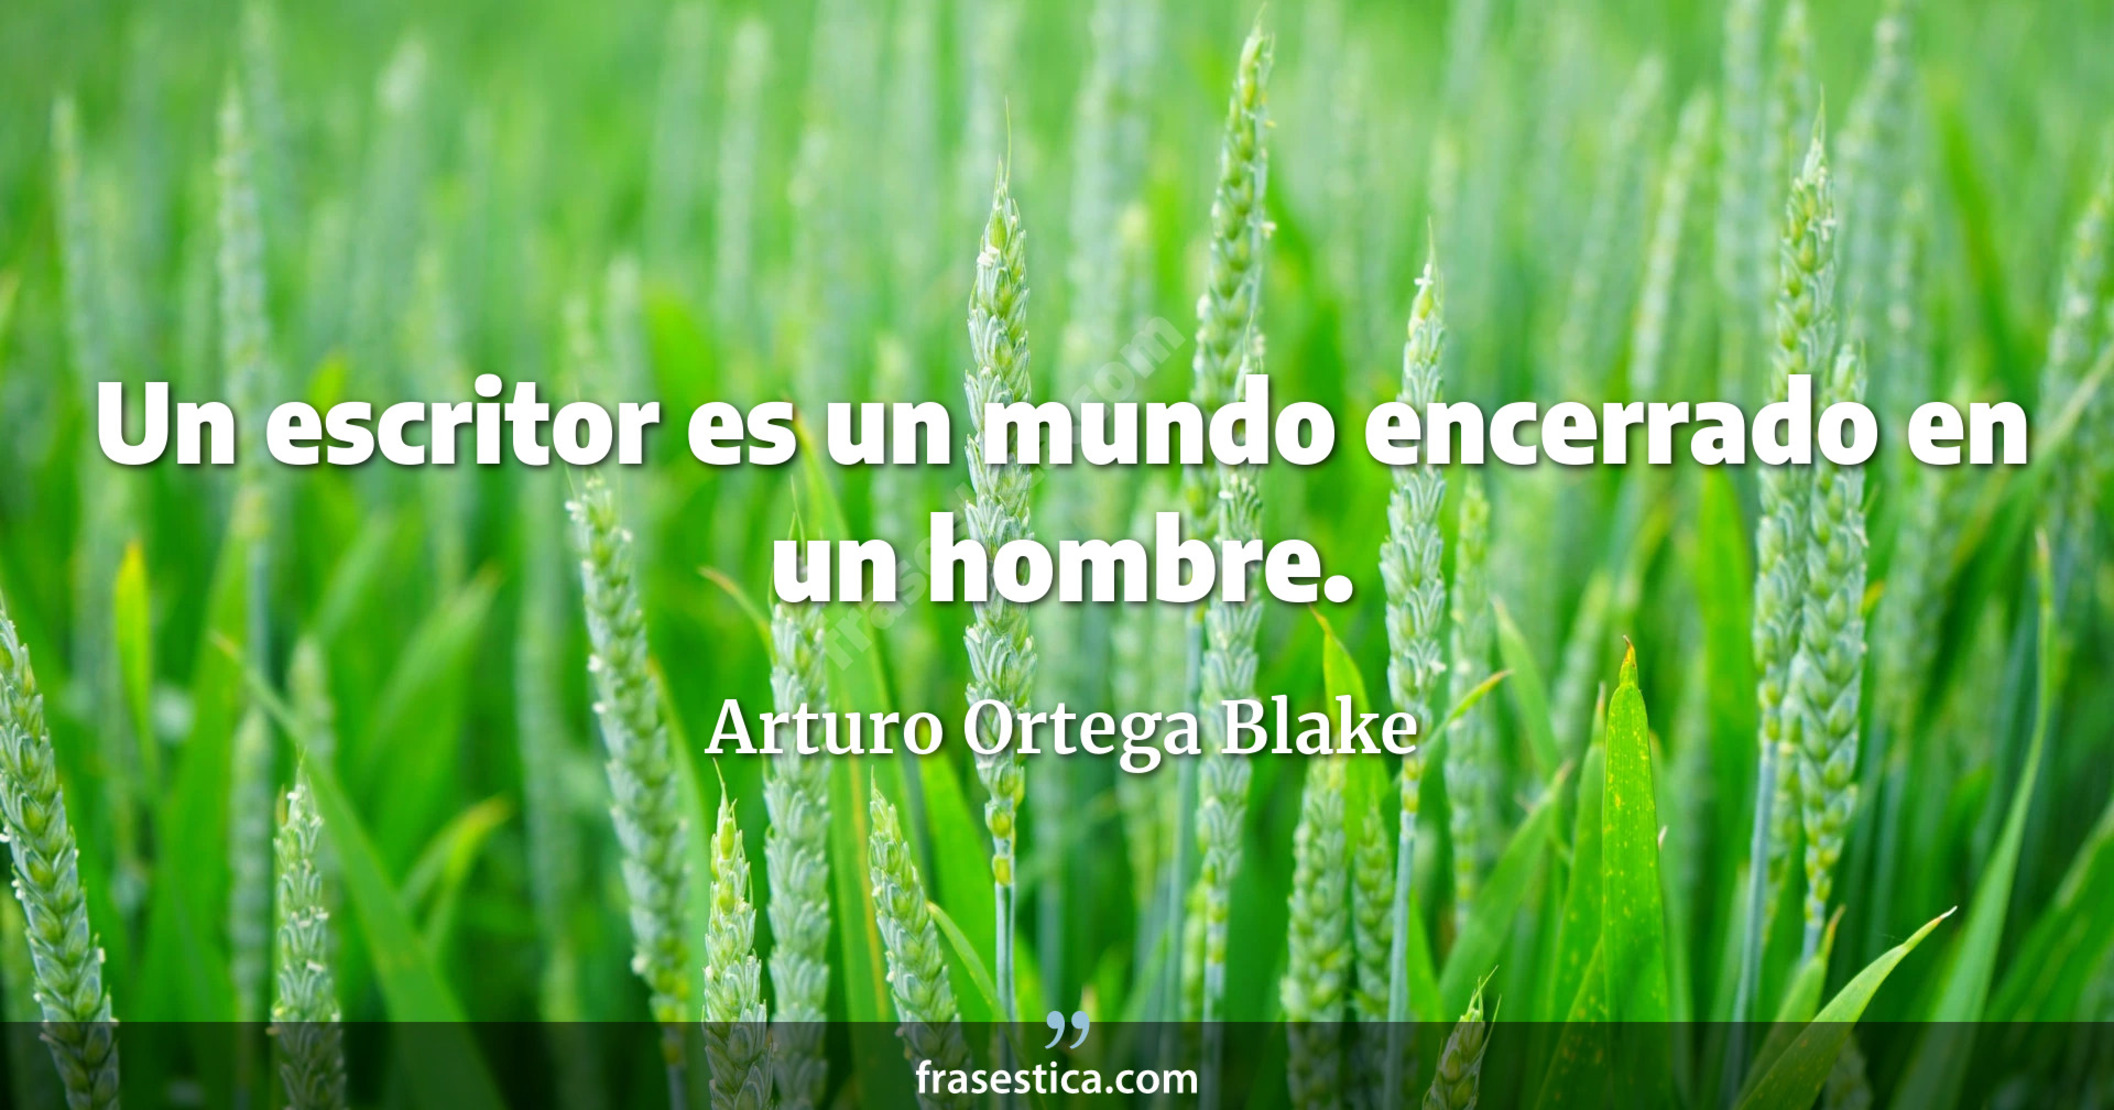 Un escritor es un mundo encerrado en un hombre. - Arturo Ortega Blake